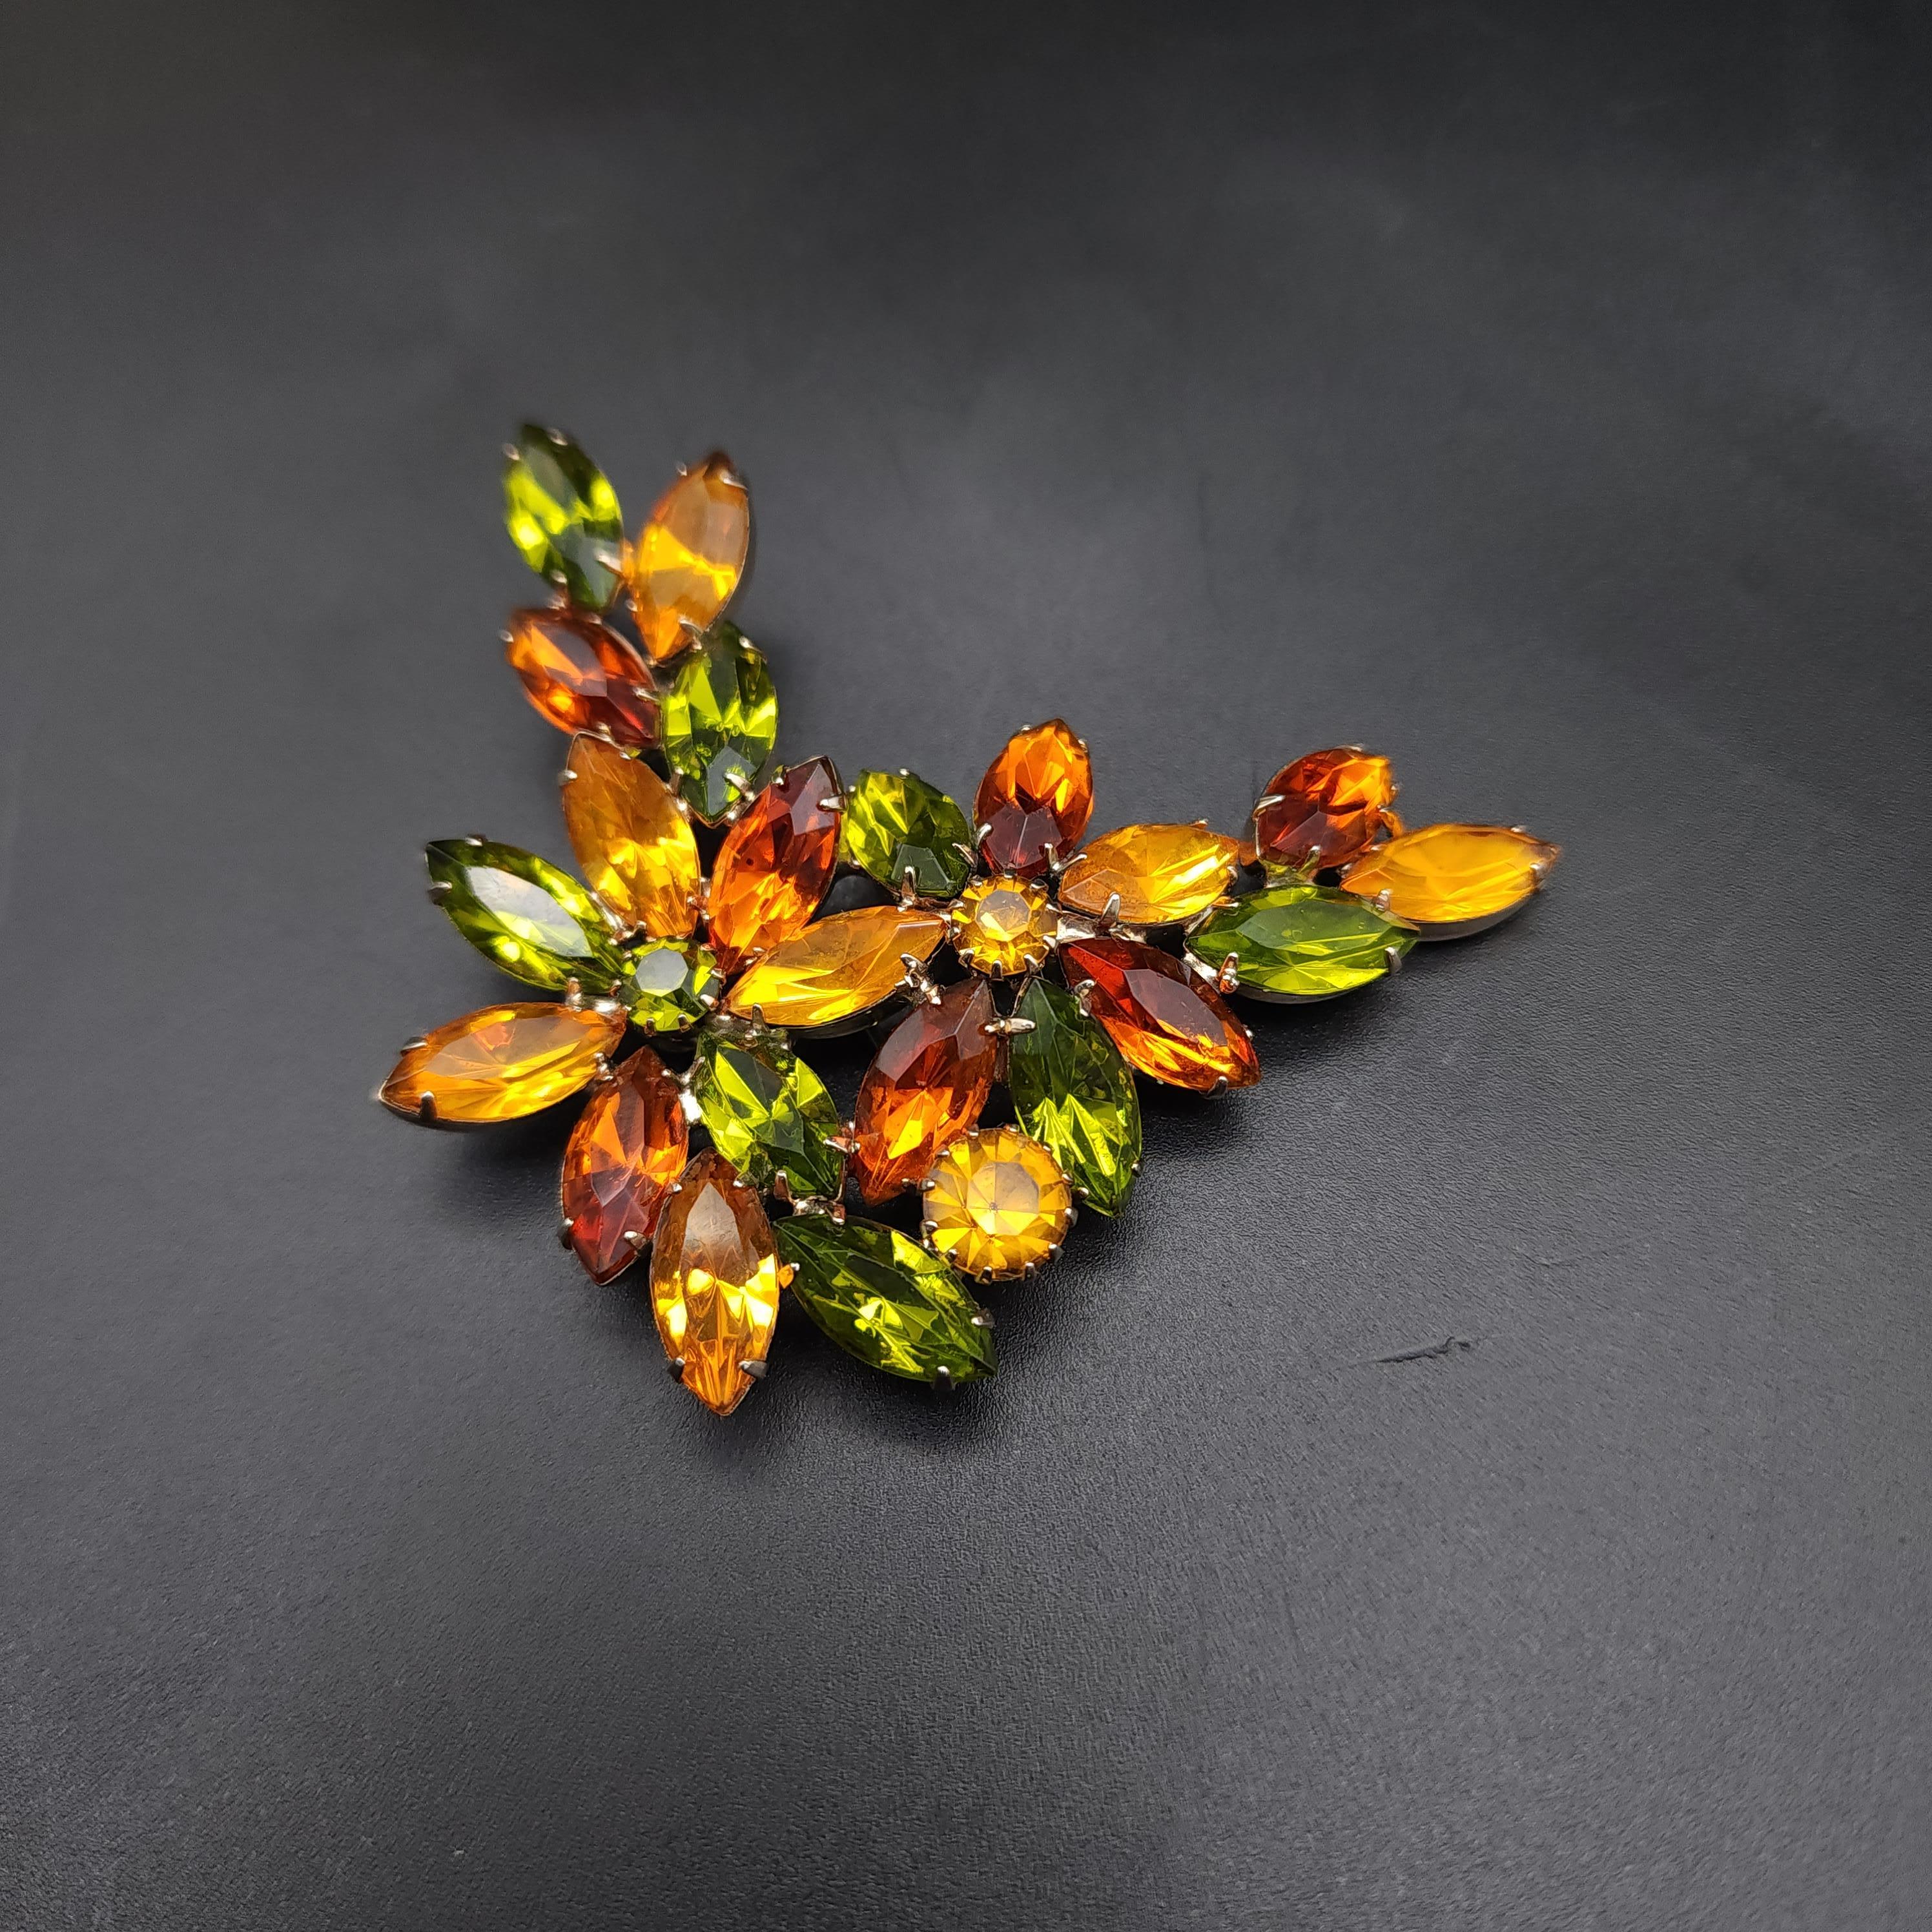 Größe: 3 x 2,75 Zoll
Glas-Kristalle
Hellgoldfarbene Metallfassung

Entdecken Sie den Retro-Charme dieser floralen Brosche im Vintage-Stil, die mit einer funkelnden Gruppe von Kristallen im Marquise- und Rundschliff besetzt ist. Die Brosche ist in